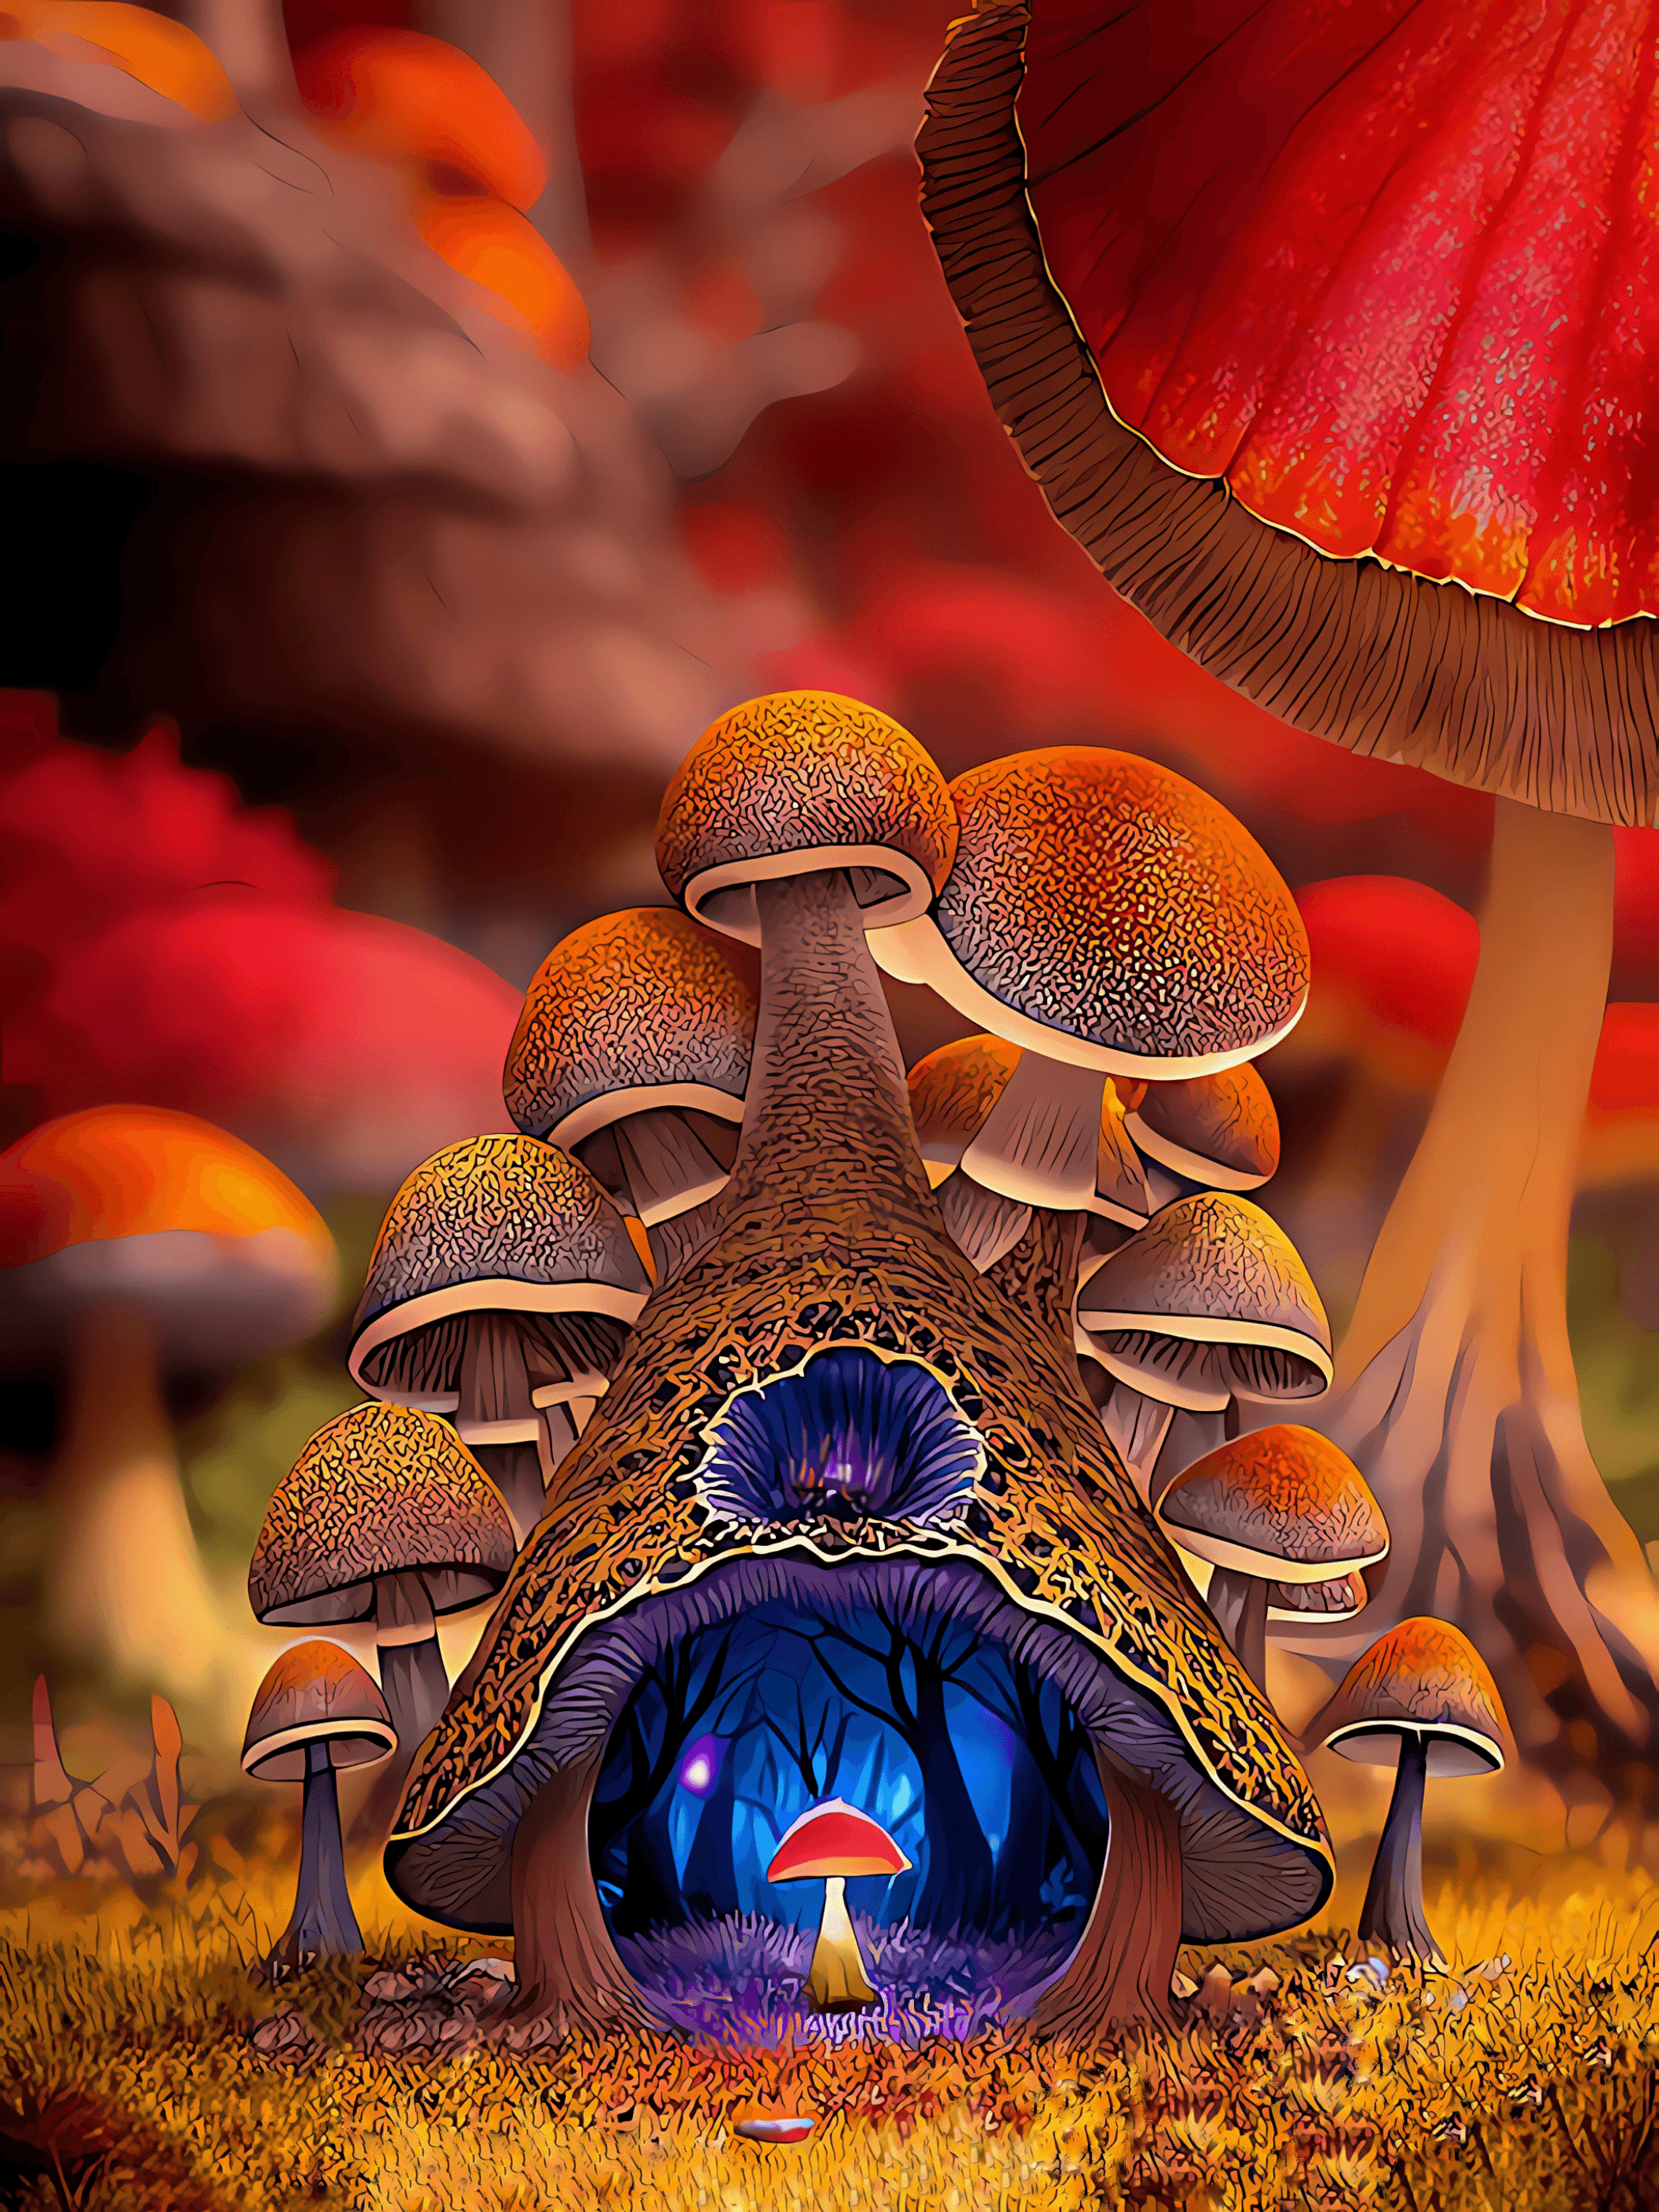 Mandelbrot Mushroom Kingdom: Well of Light